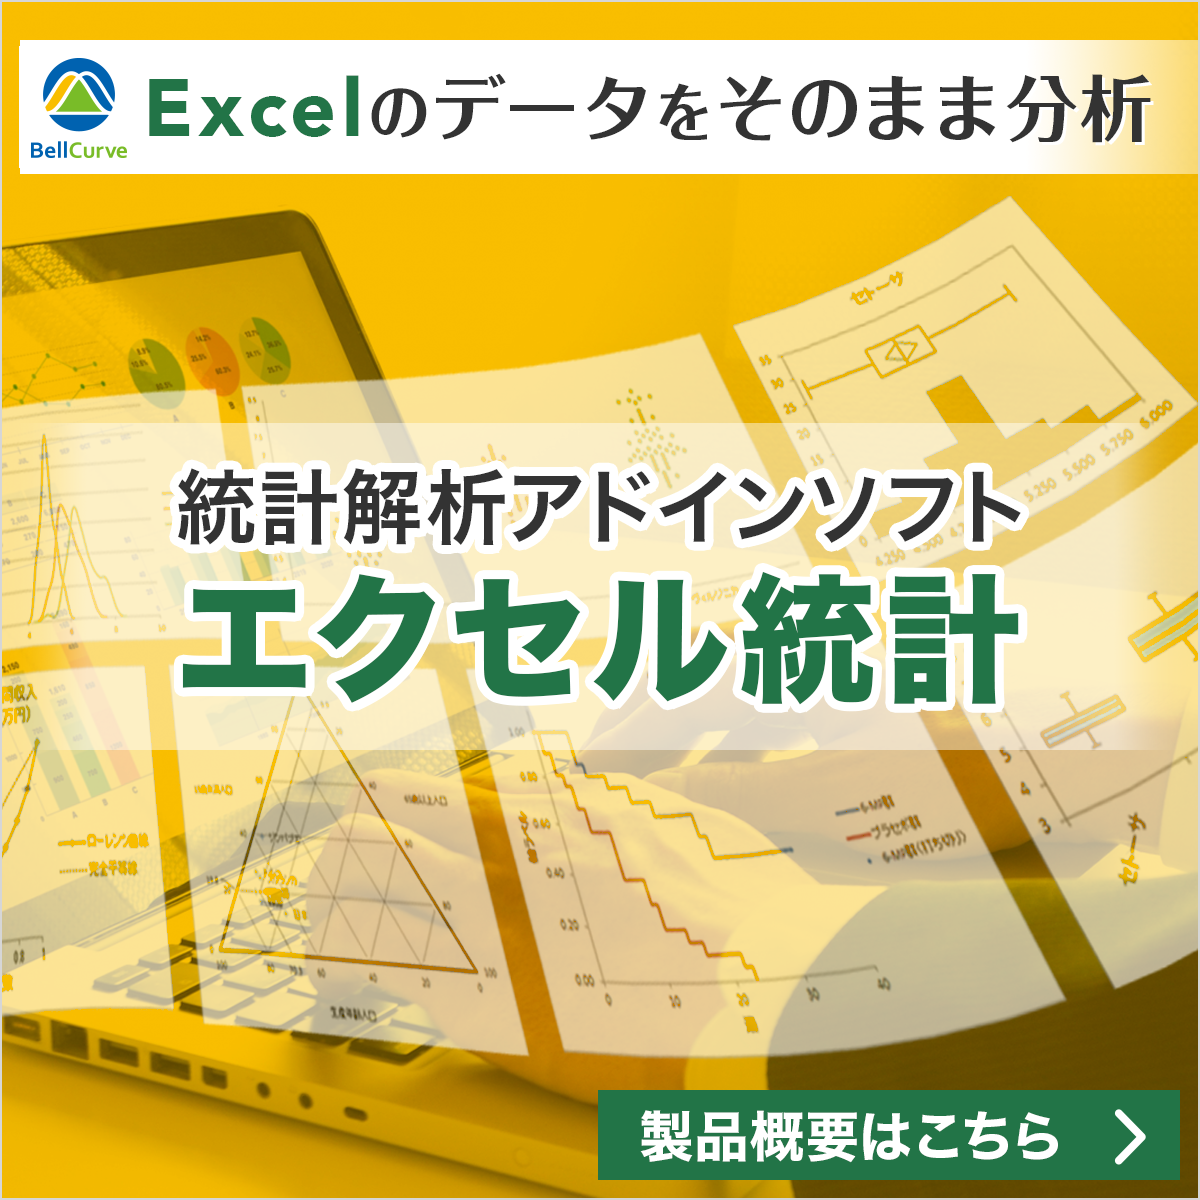 Excelのデータをそのまま分析。統計解析ソフト「エクセル統計」